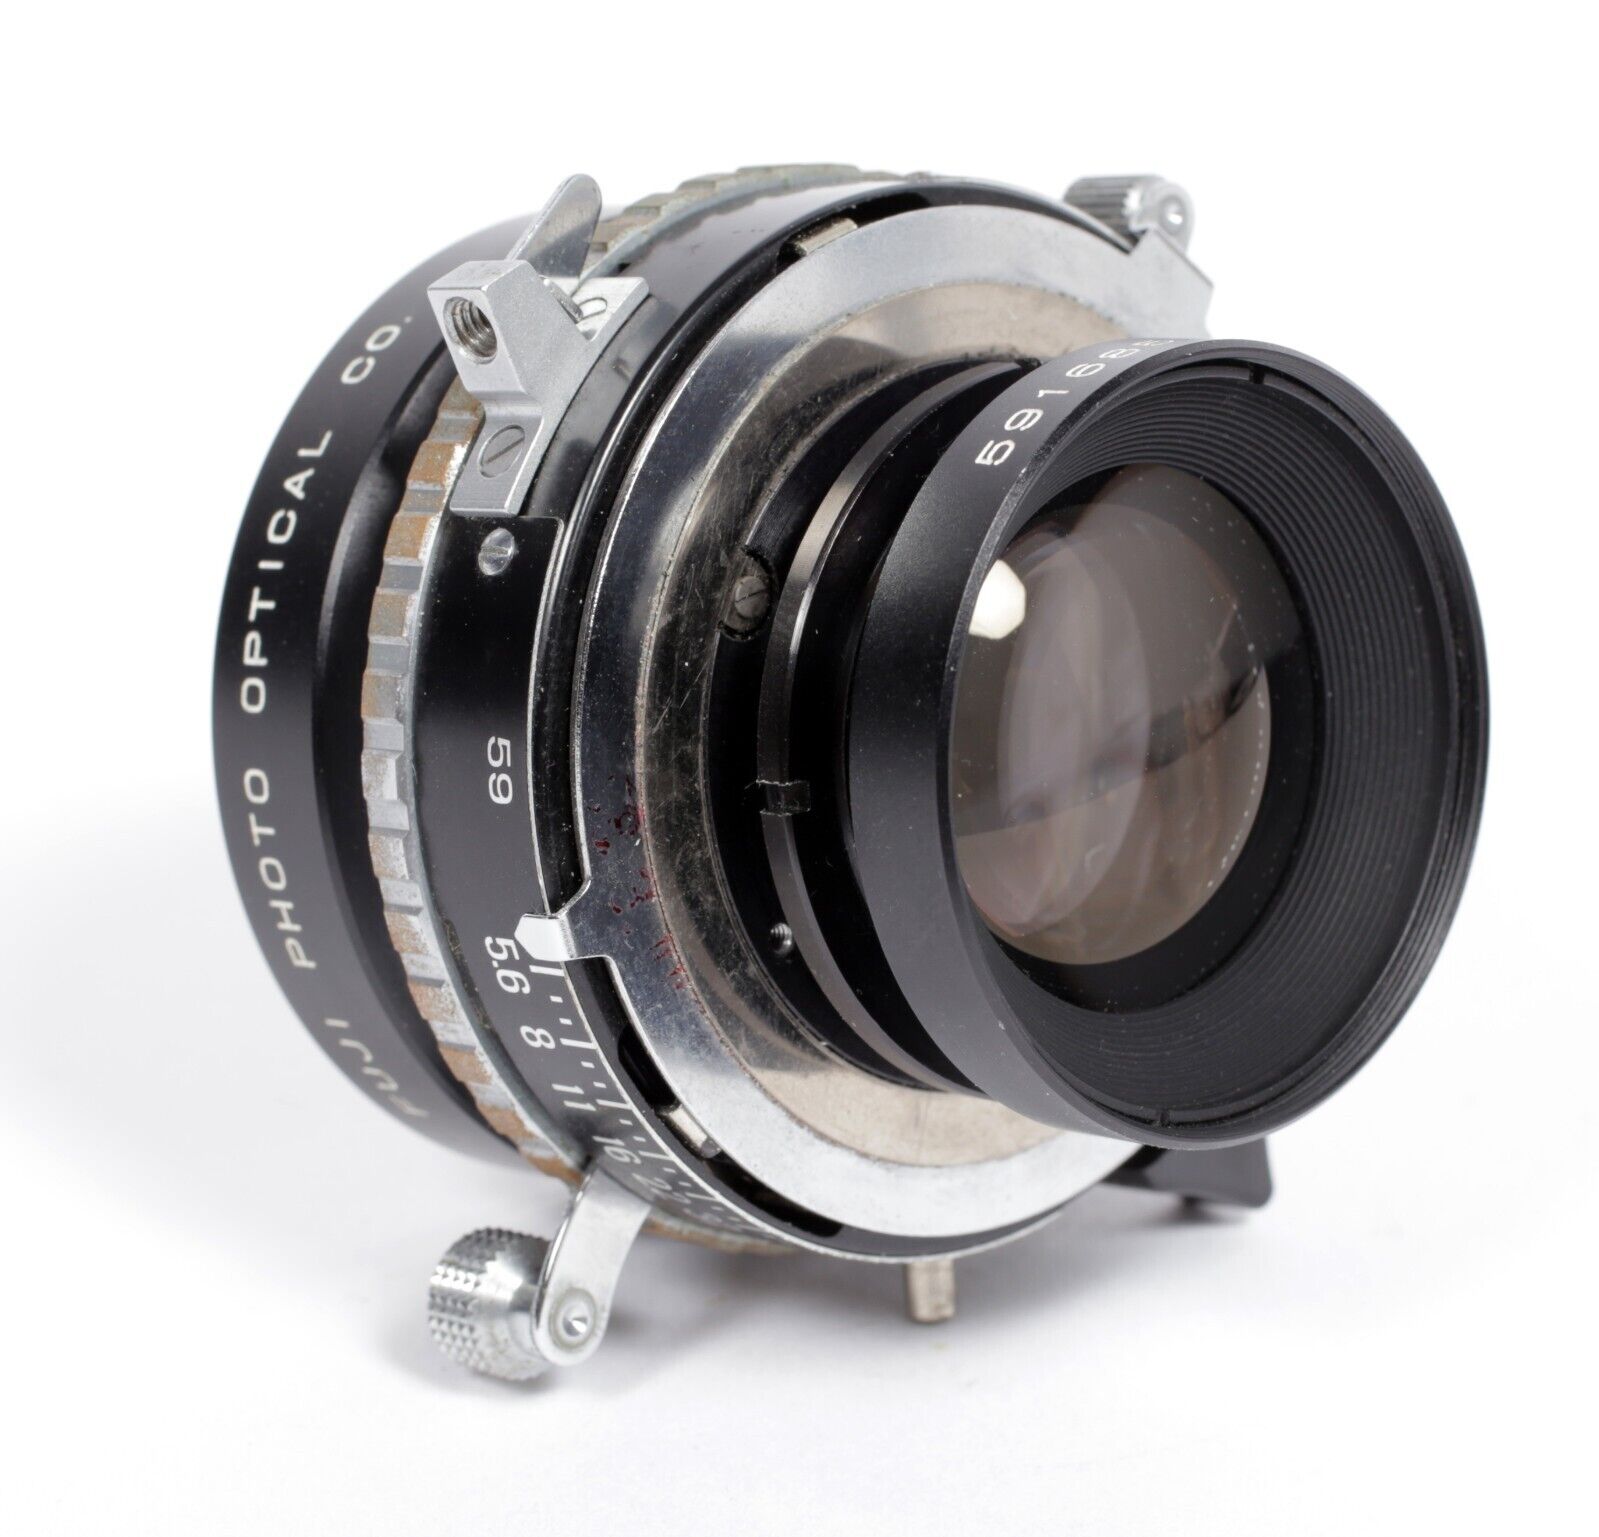 Fuji Fujinon W 125mm F5.6 lens in Copal #0 shutter #685 | CatLABS